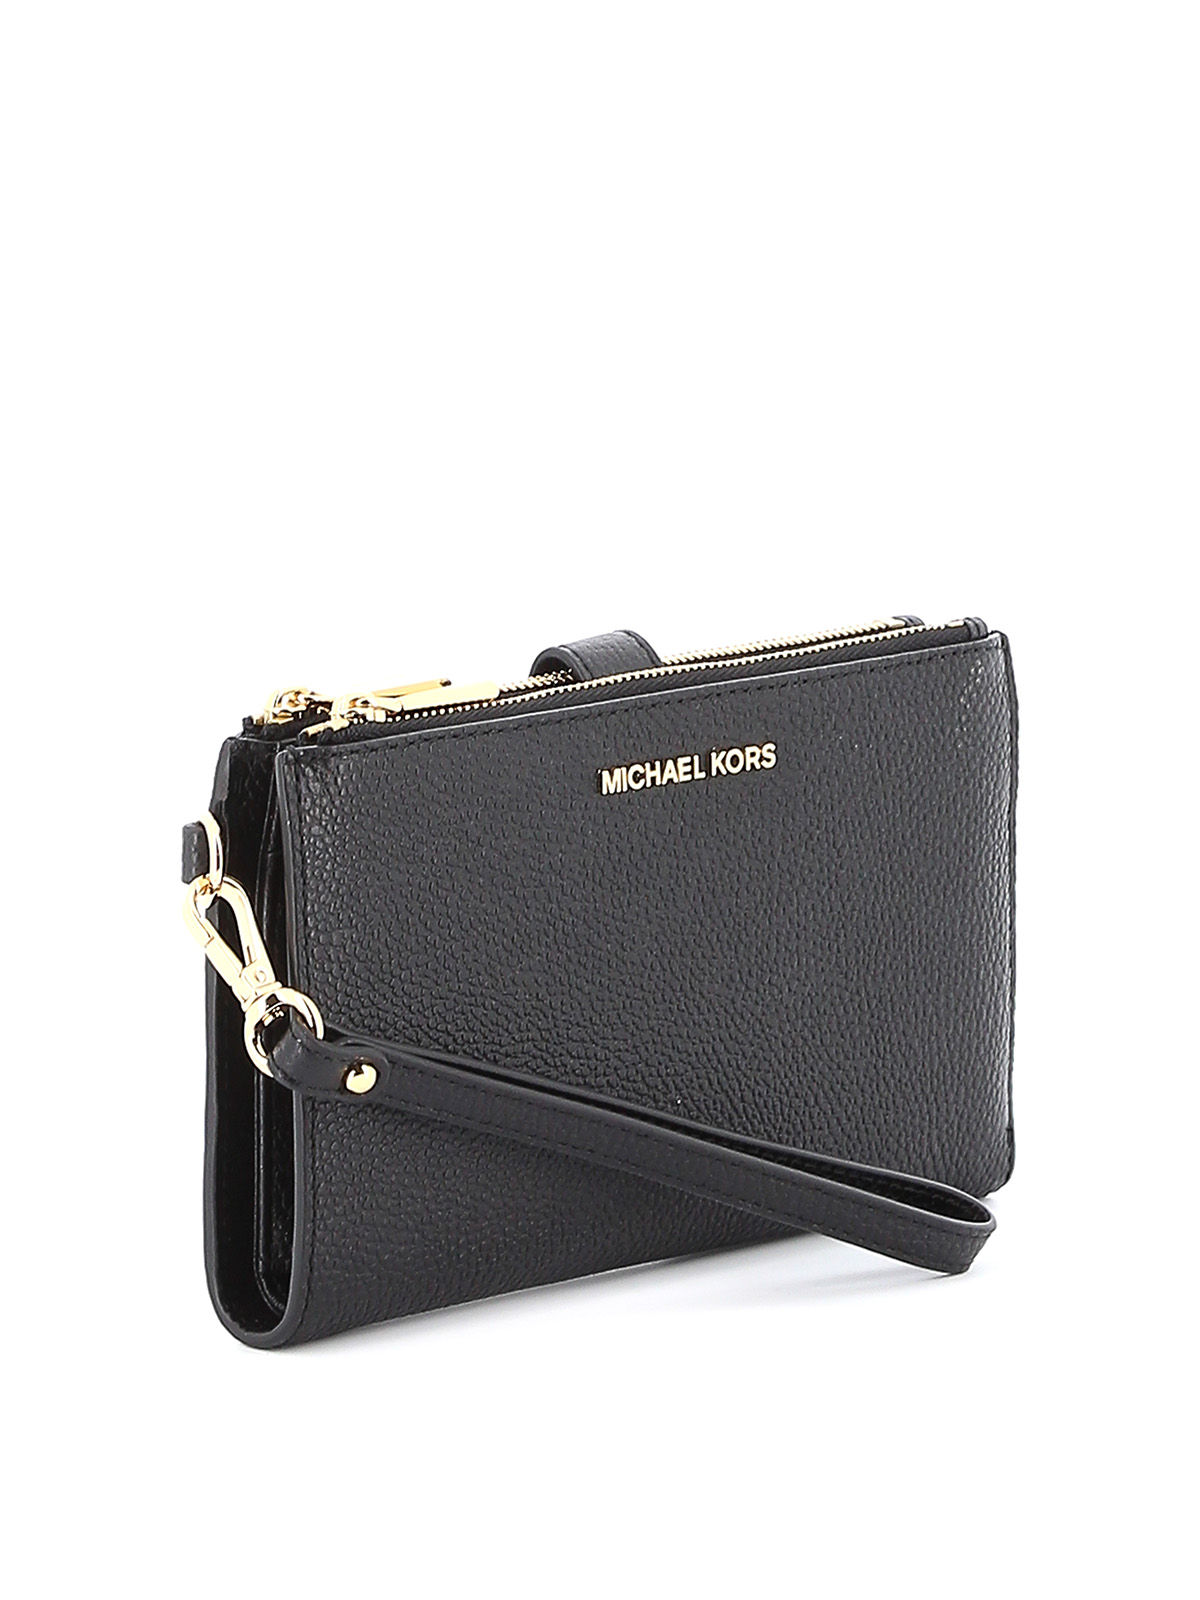 Wallets & purses Michael Kors - Jet Set leather double zip wallet -  34F9GAFW4L001